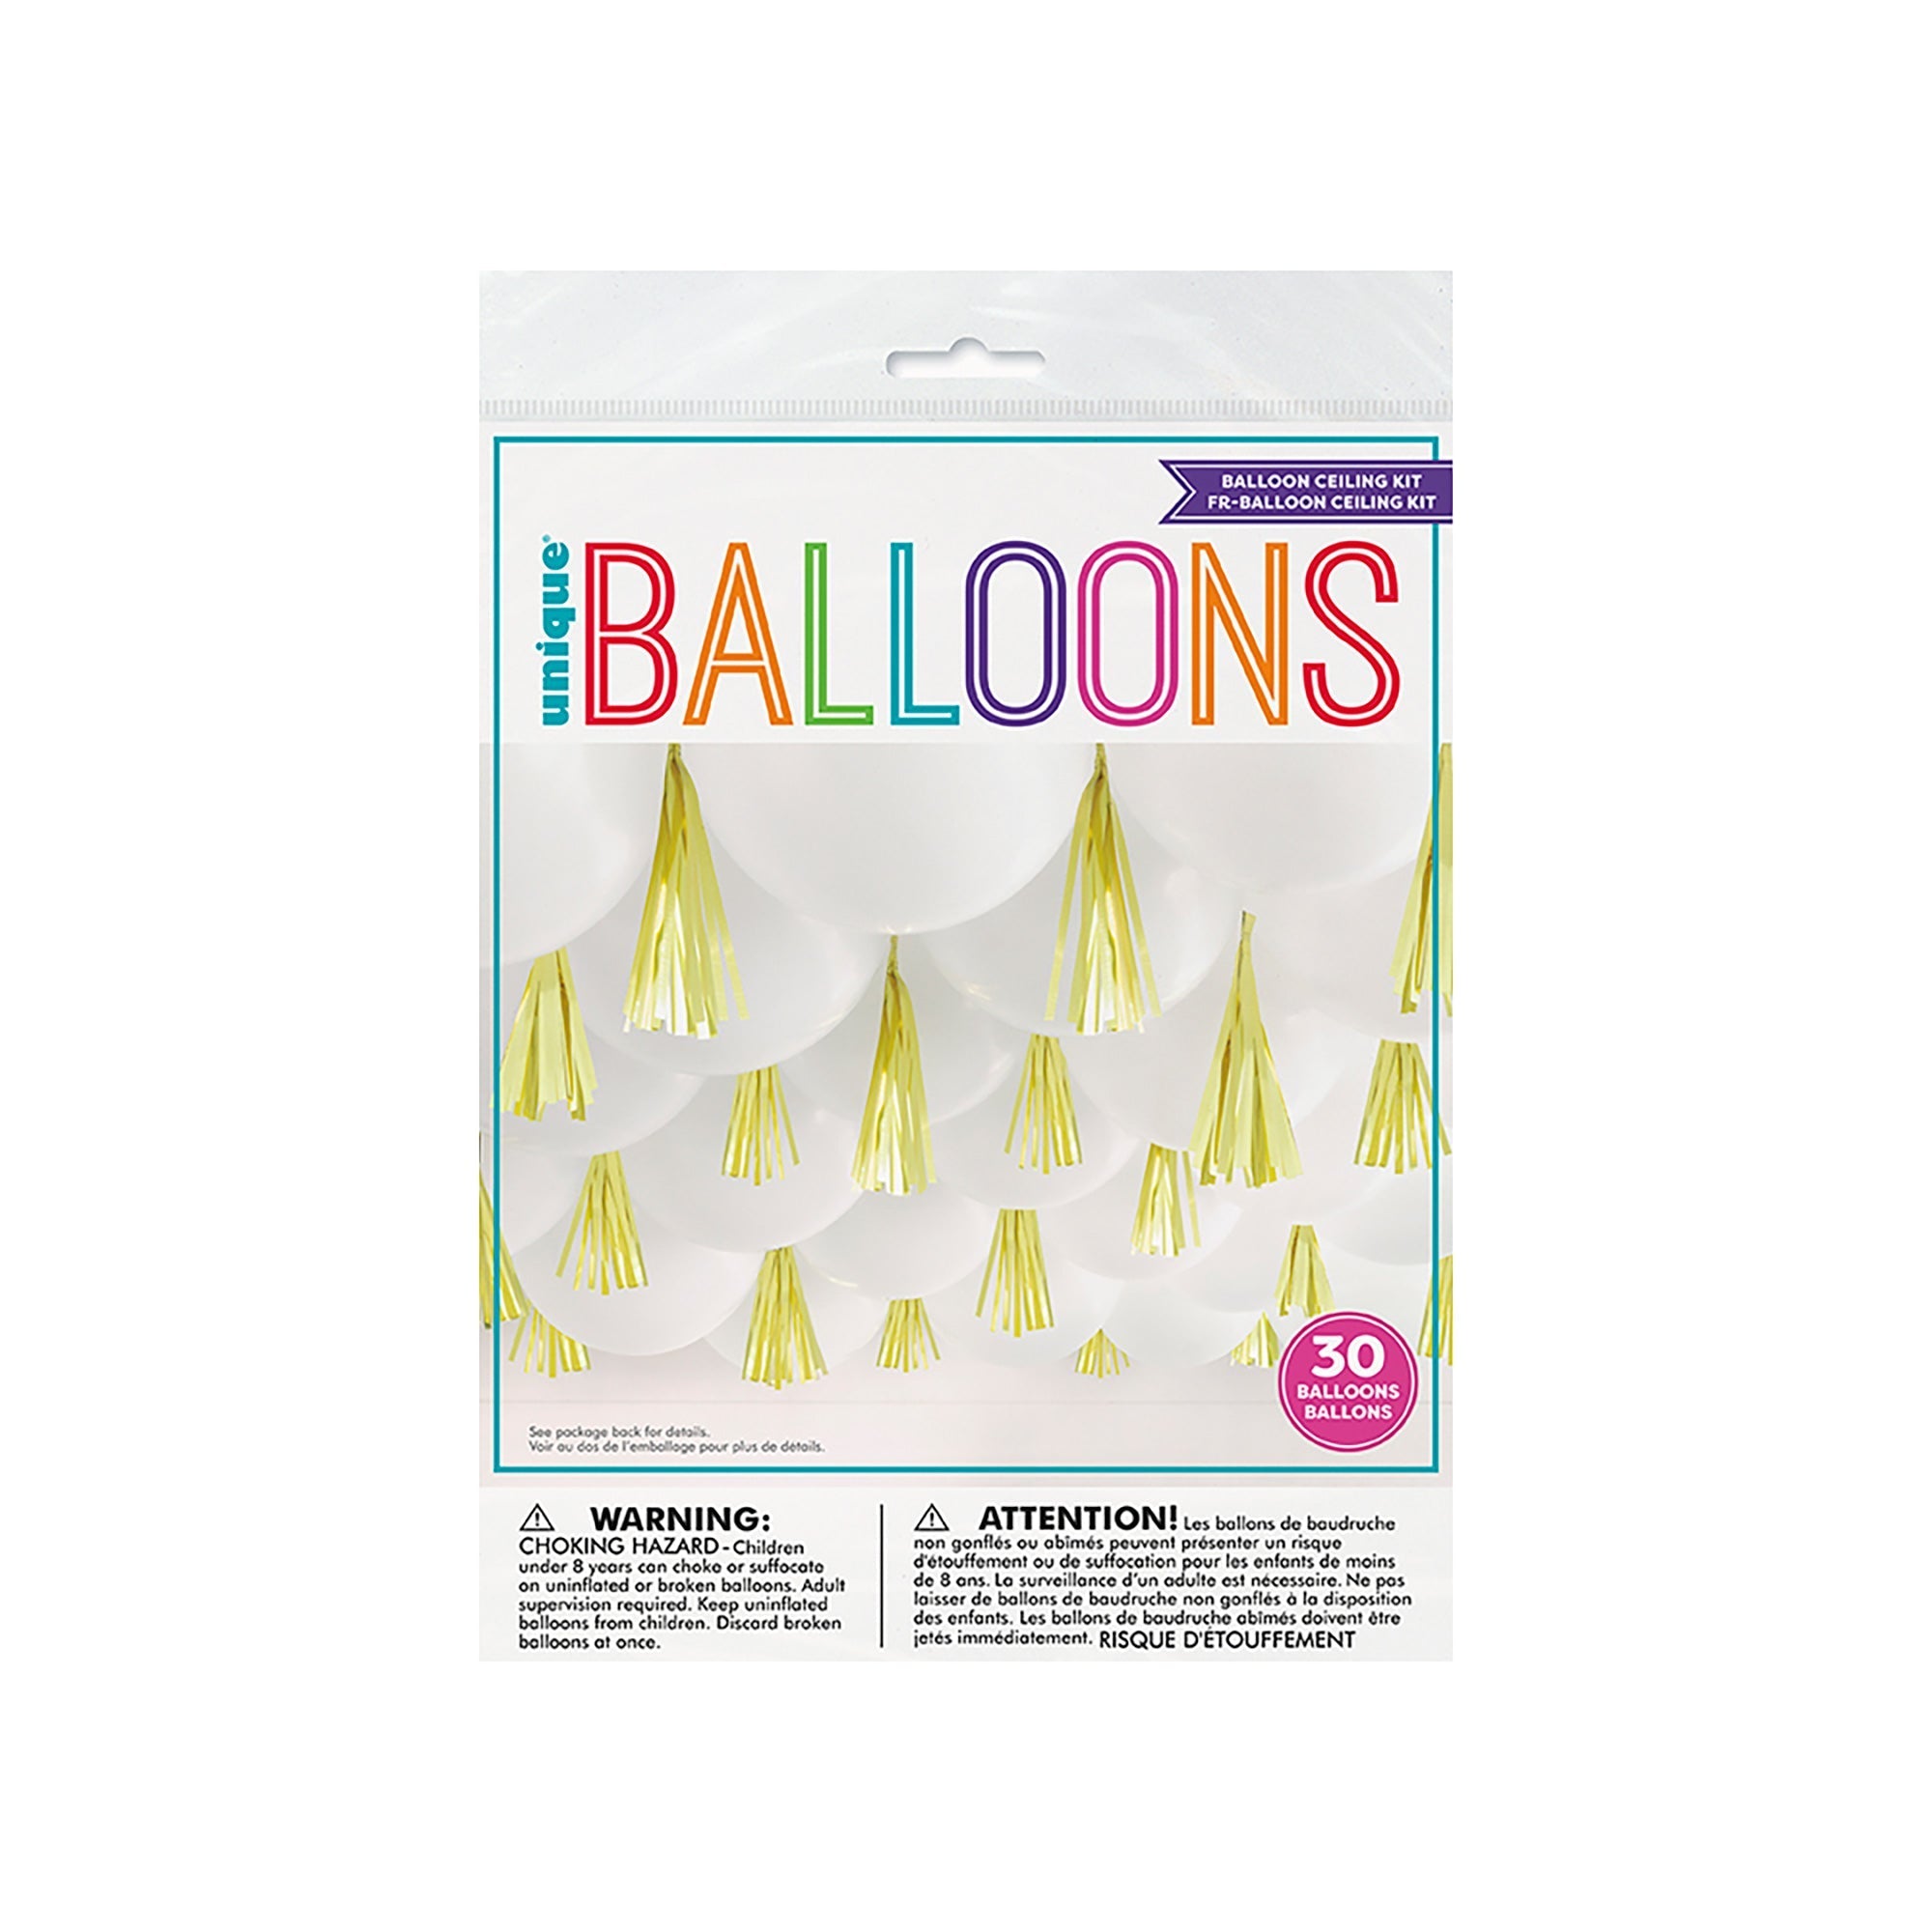 Ballons Stitch Lilo, Ballon Baudruche Stitch Lilo, Ballons de Décoration  d'anniversaire Stitch Lilo, Deco Anniversaire, Ballon Gonflable, Ballon